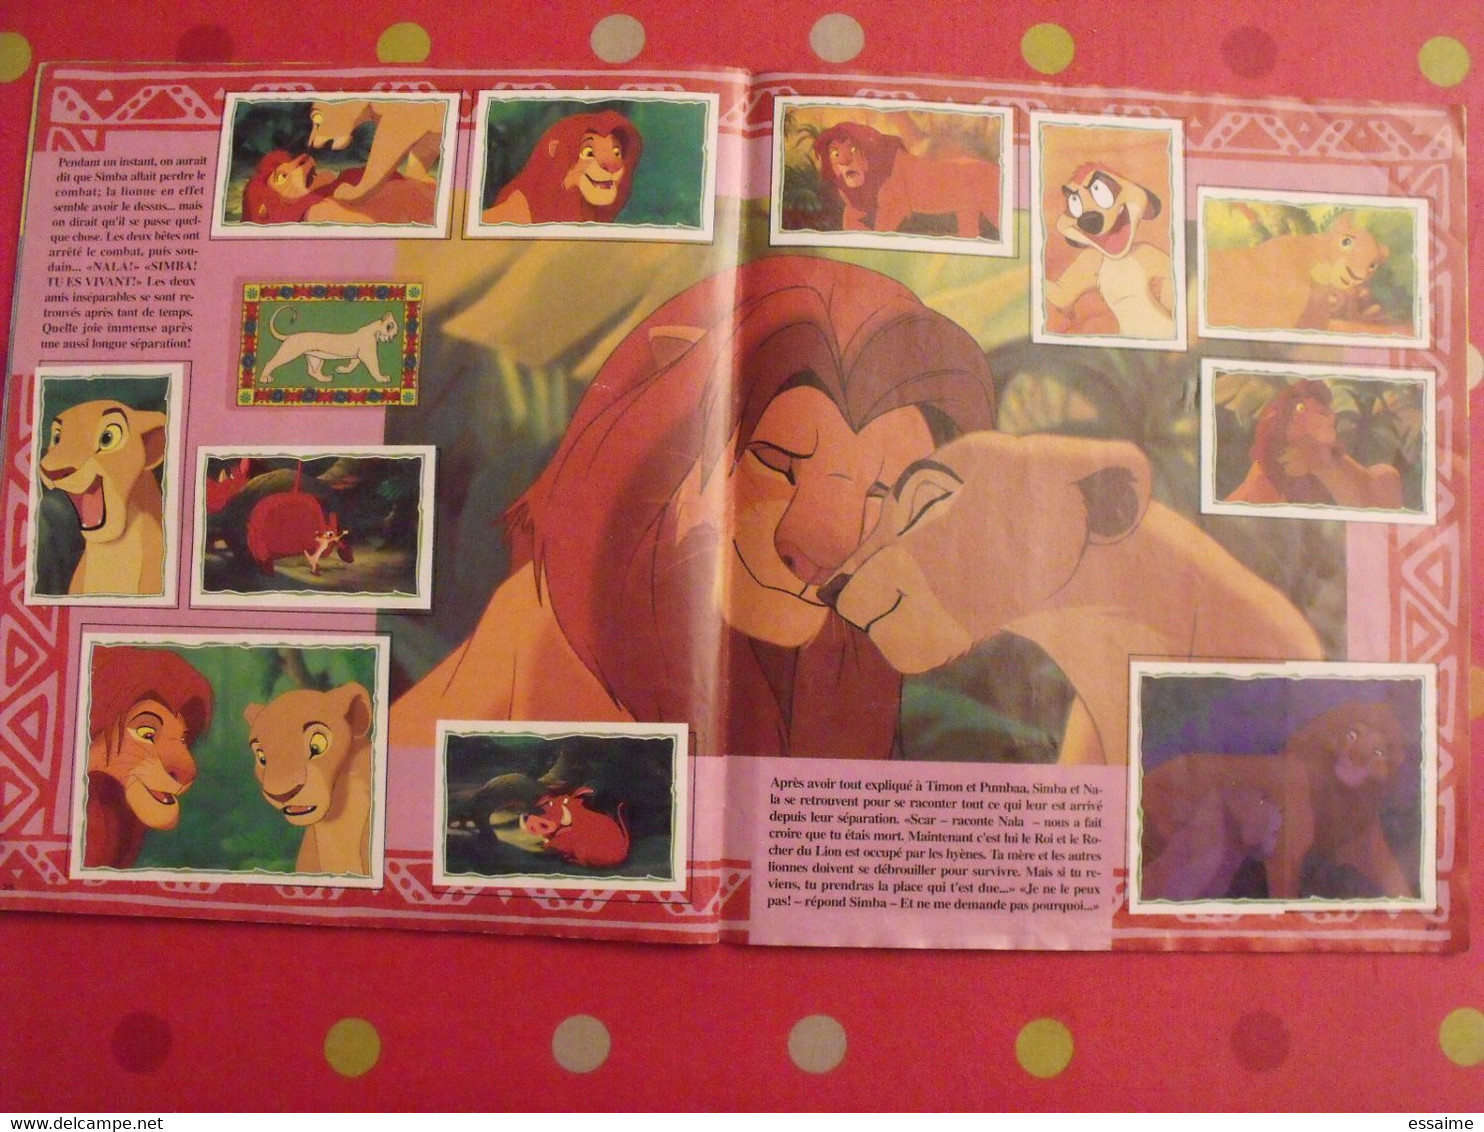 album d'images collées Panini. Le roi Lion. complet (232 images). 1994